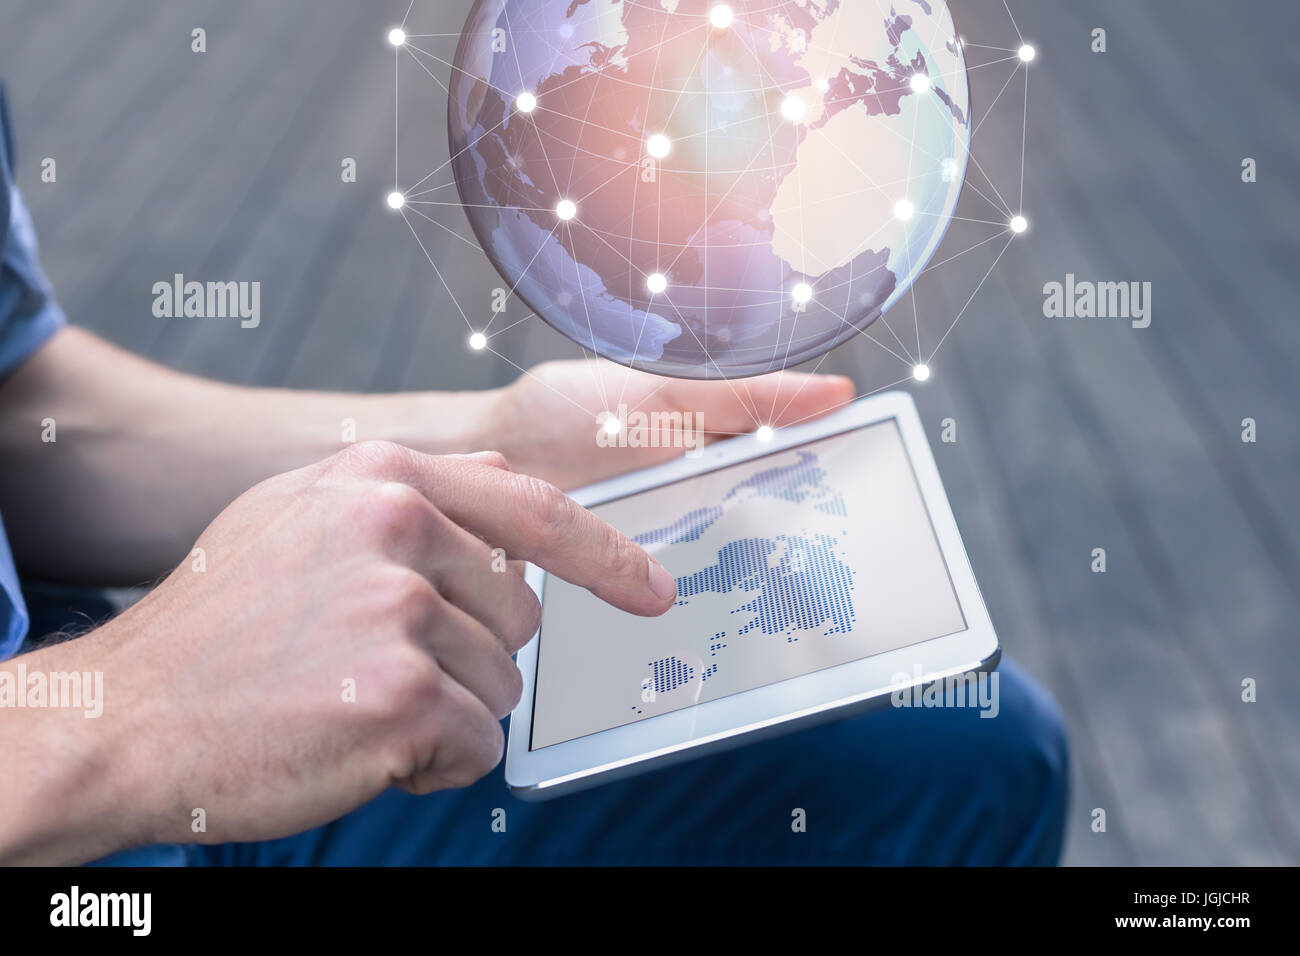 World wide business concept avec une personne utilisant un ordinateur tablette numérique avec la réalité augmentée (AR) pour visualiser un globe terrestre en 3D avec les Banque D'Images